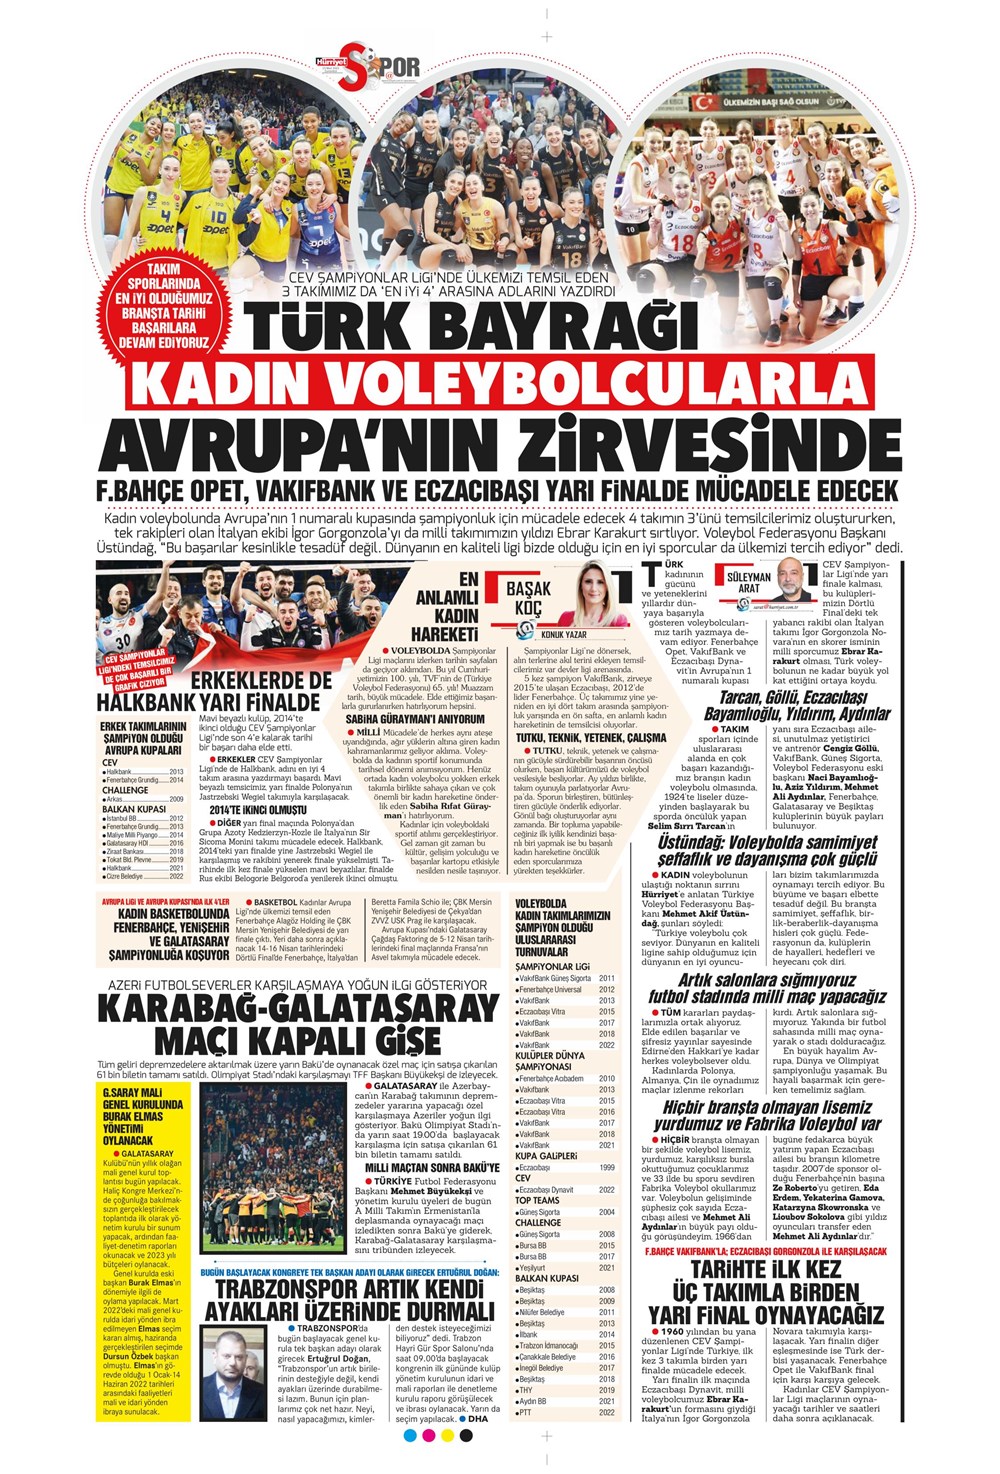 "Yeni bir başlangıç" - Sporun manşetleri - 19. Foto